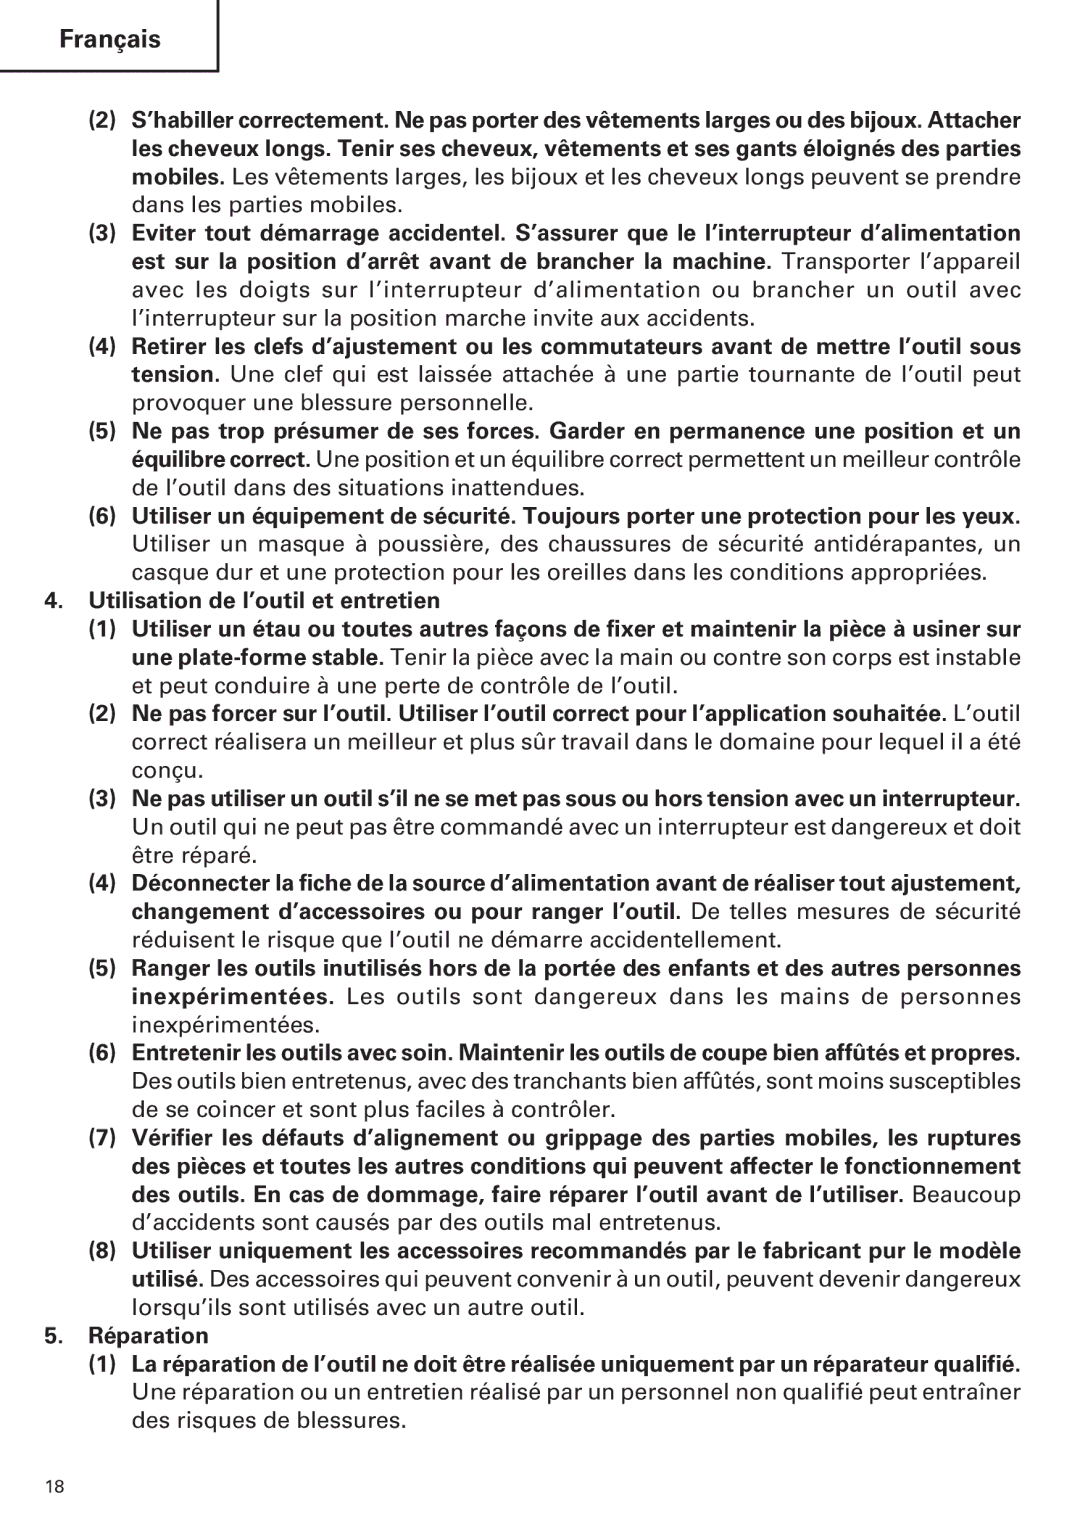 Hitachi CE 16SA instruction manual Français 